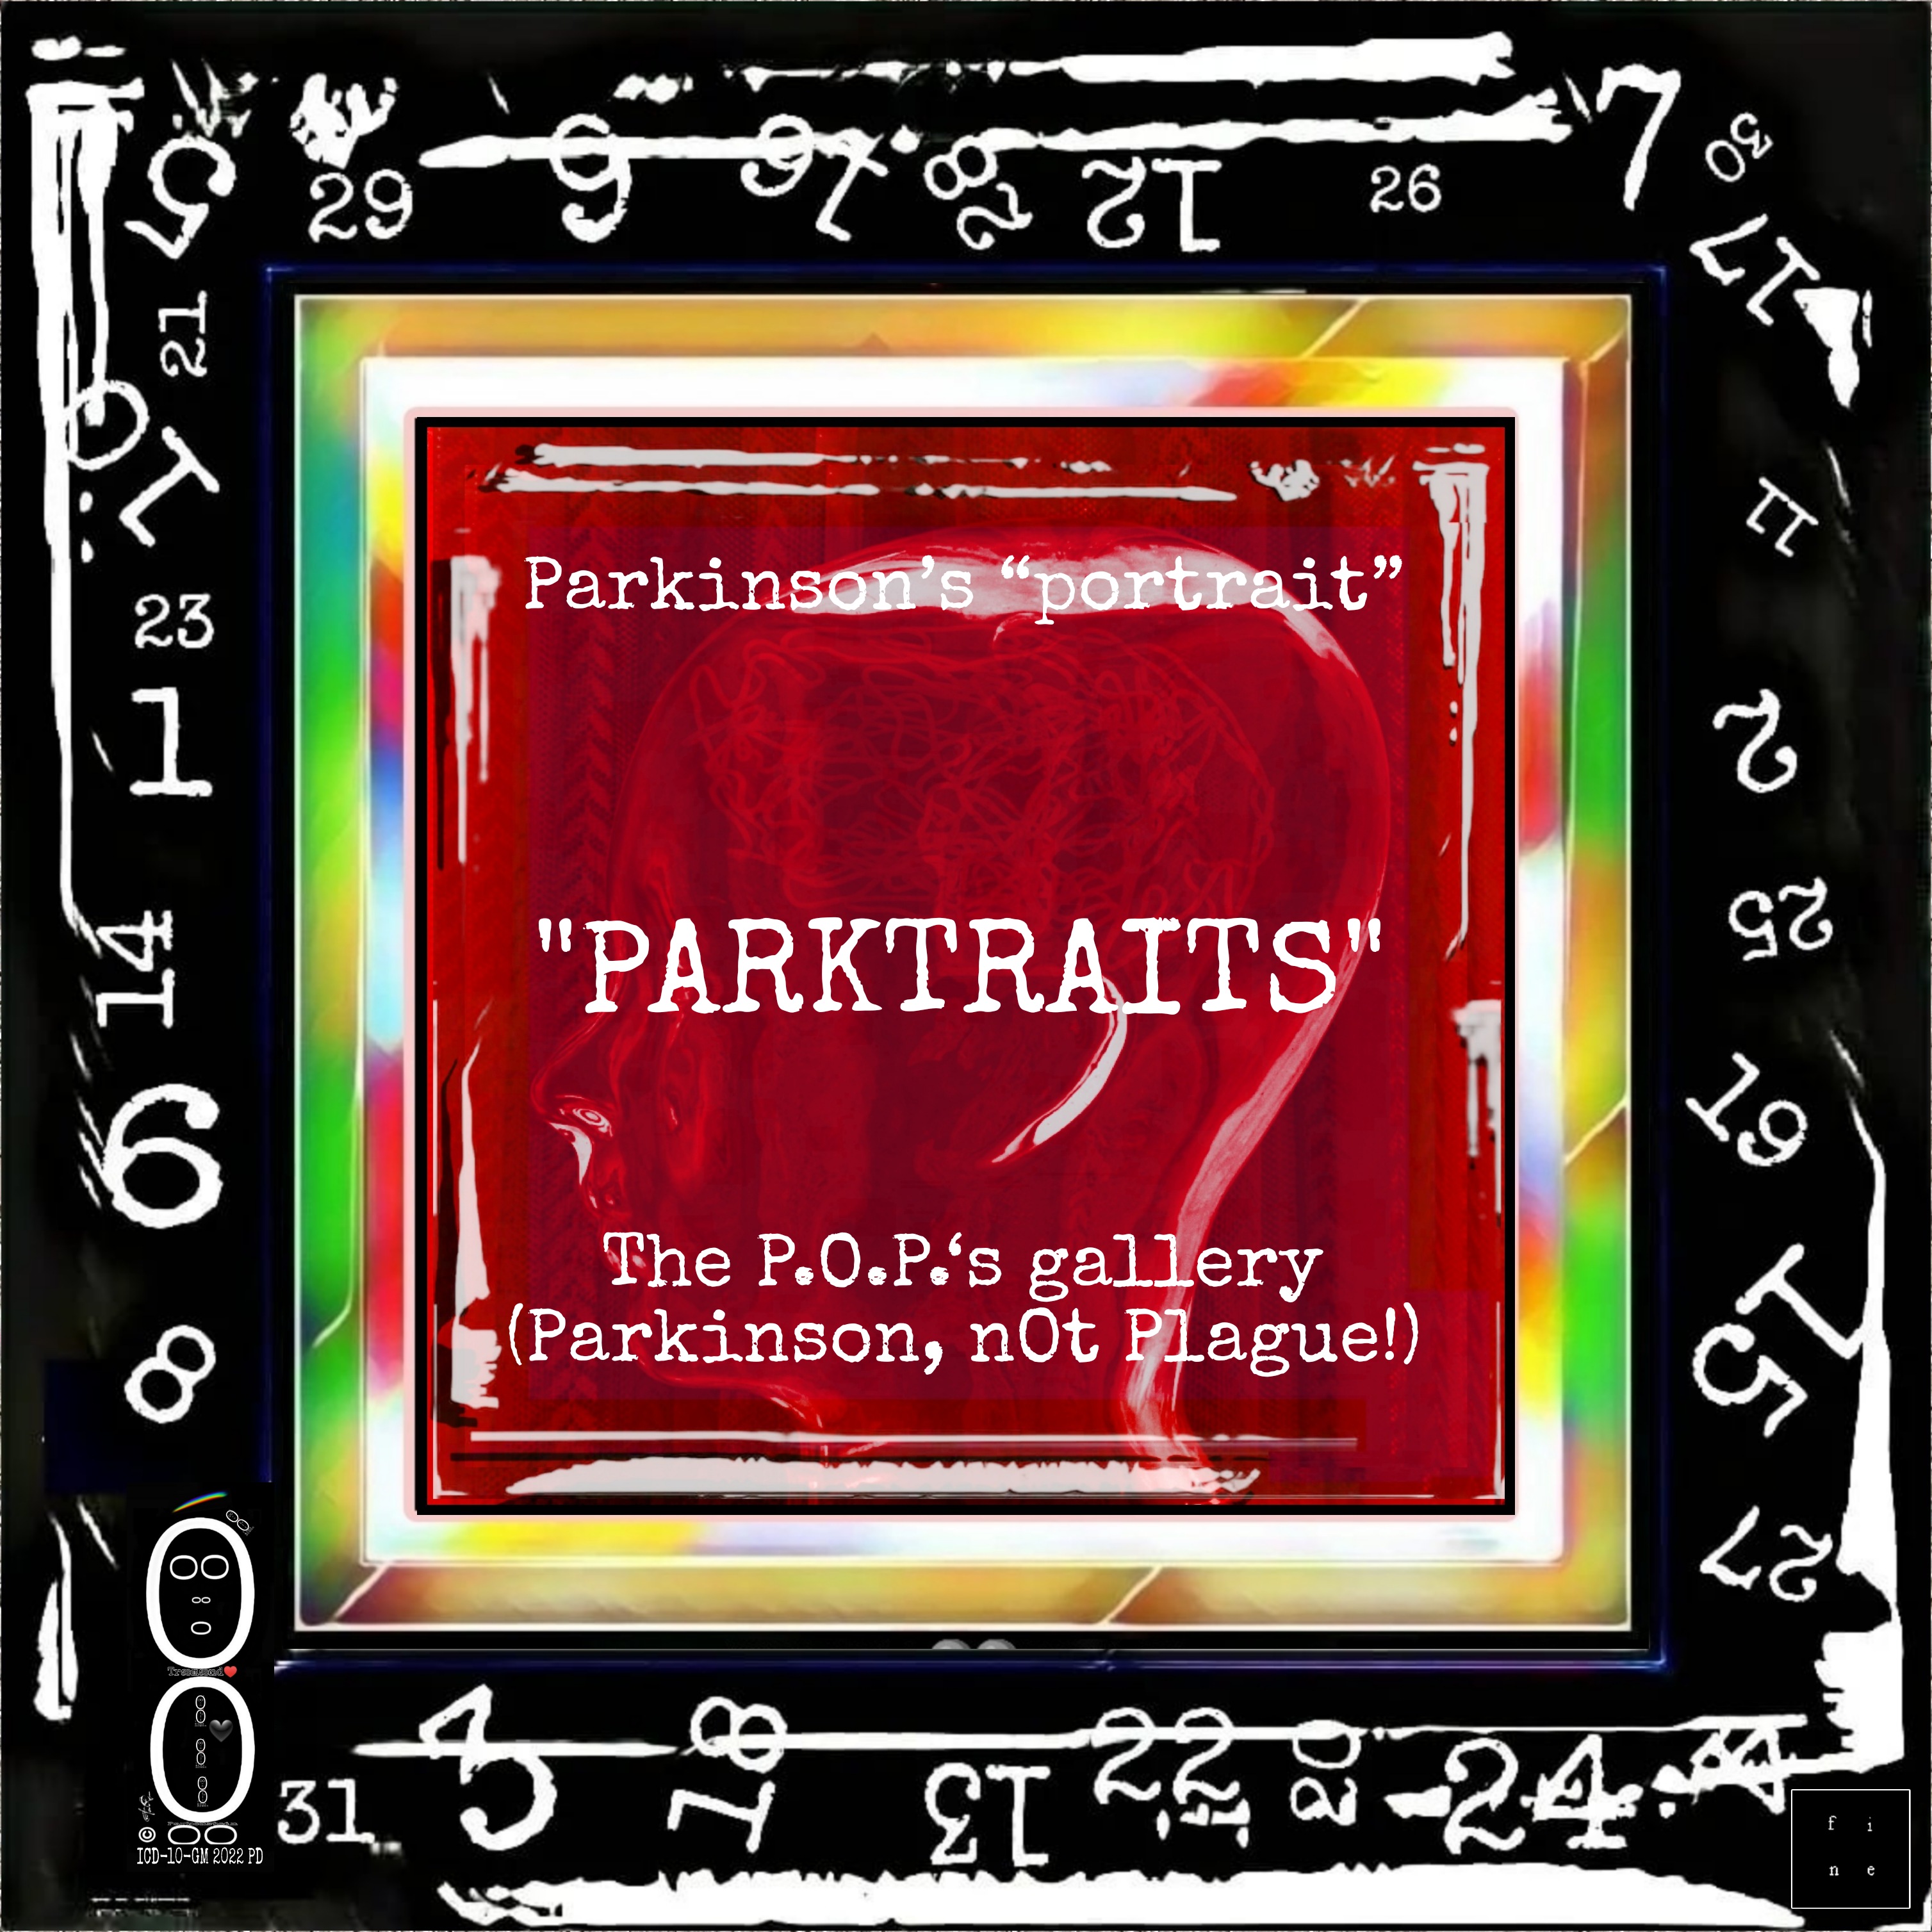 #Parktraits project_logo